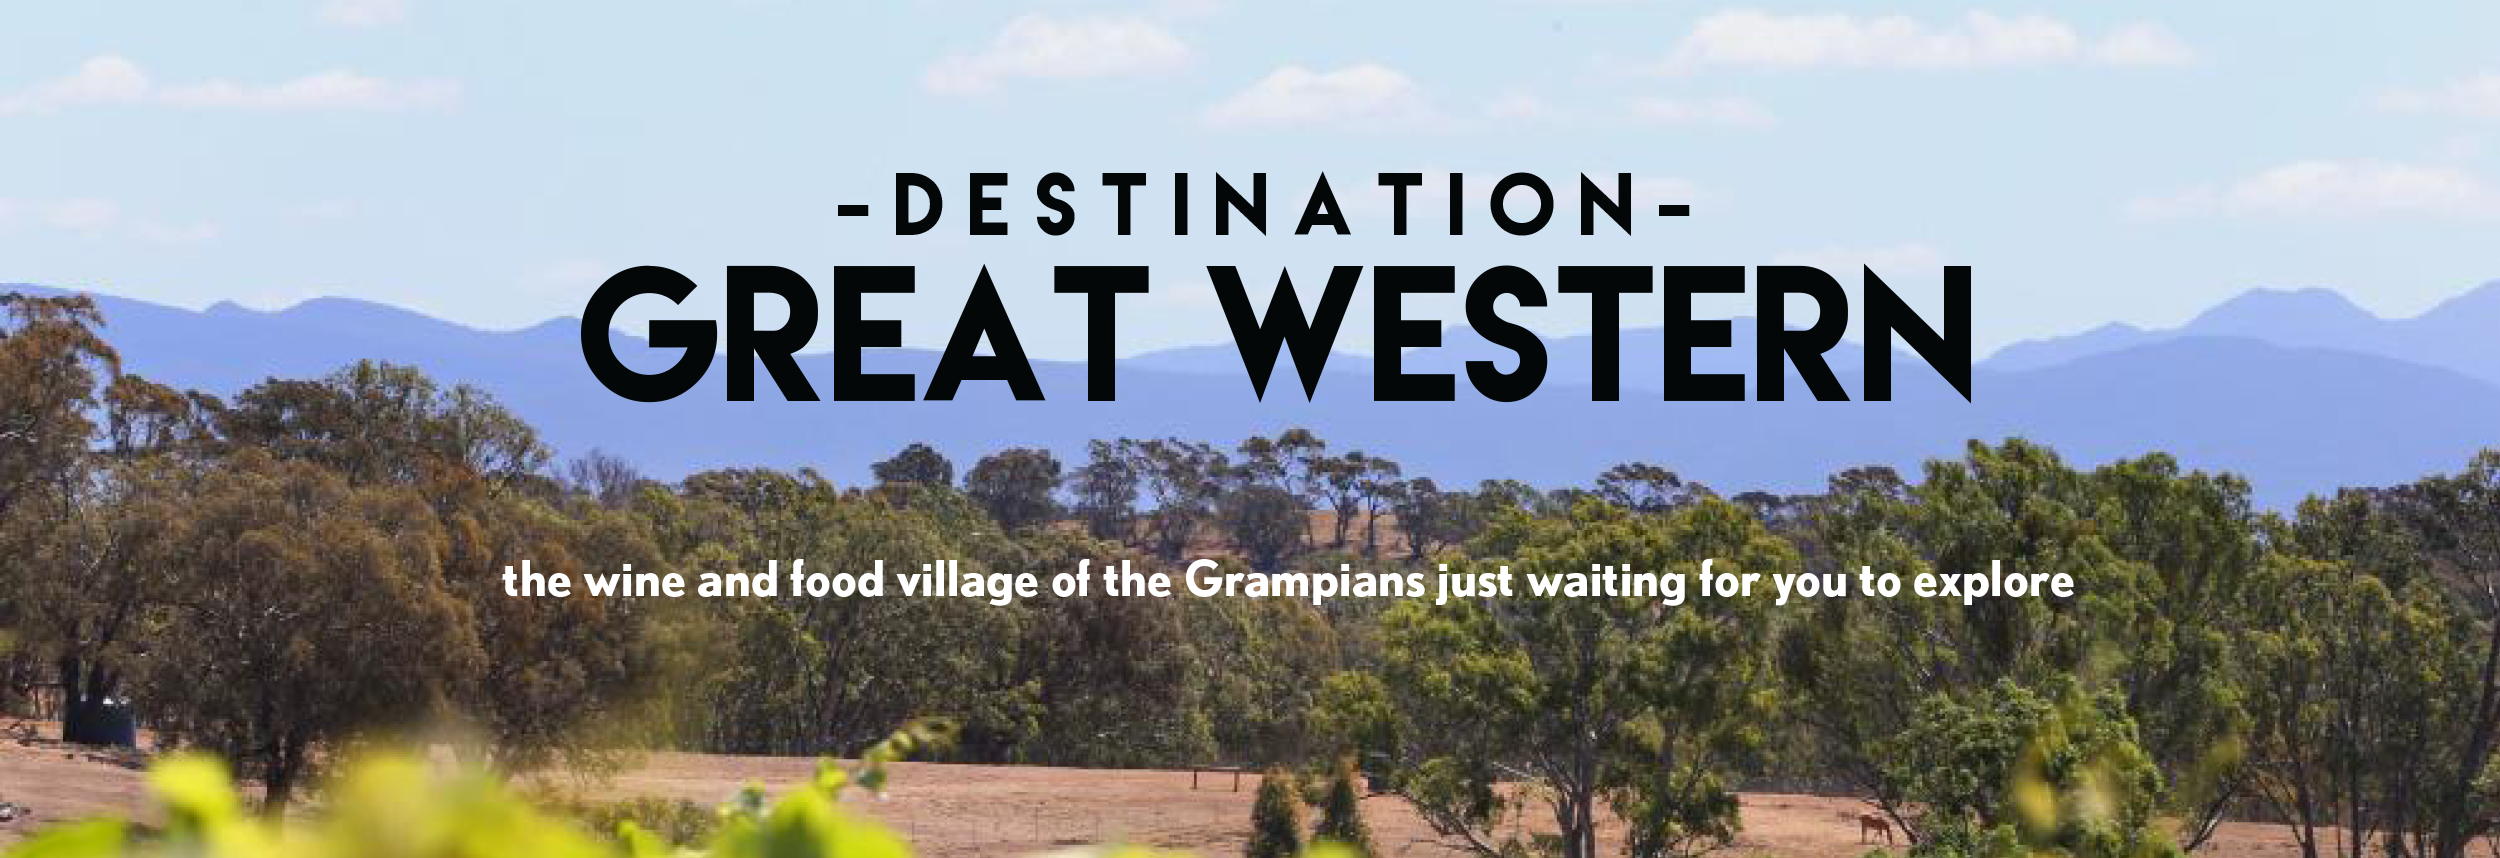 Destination Great Western